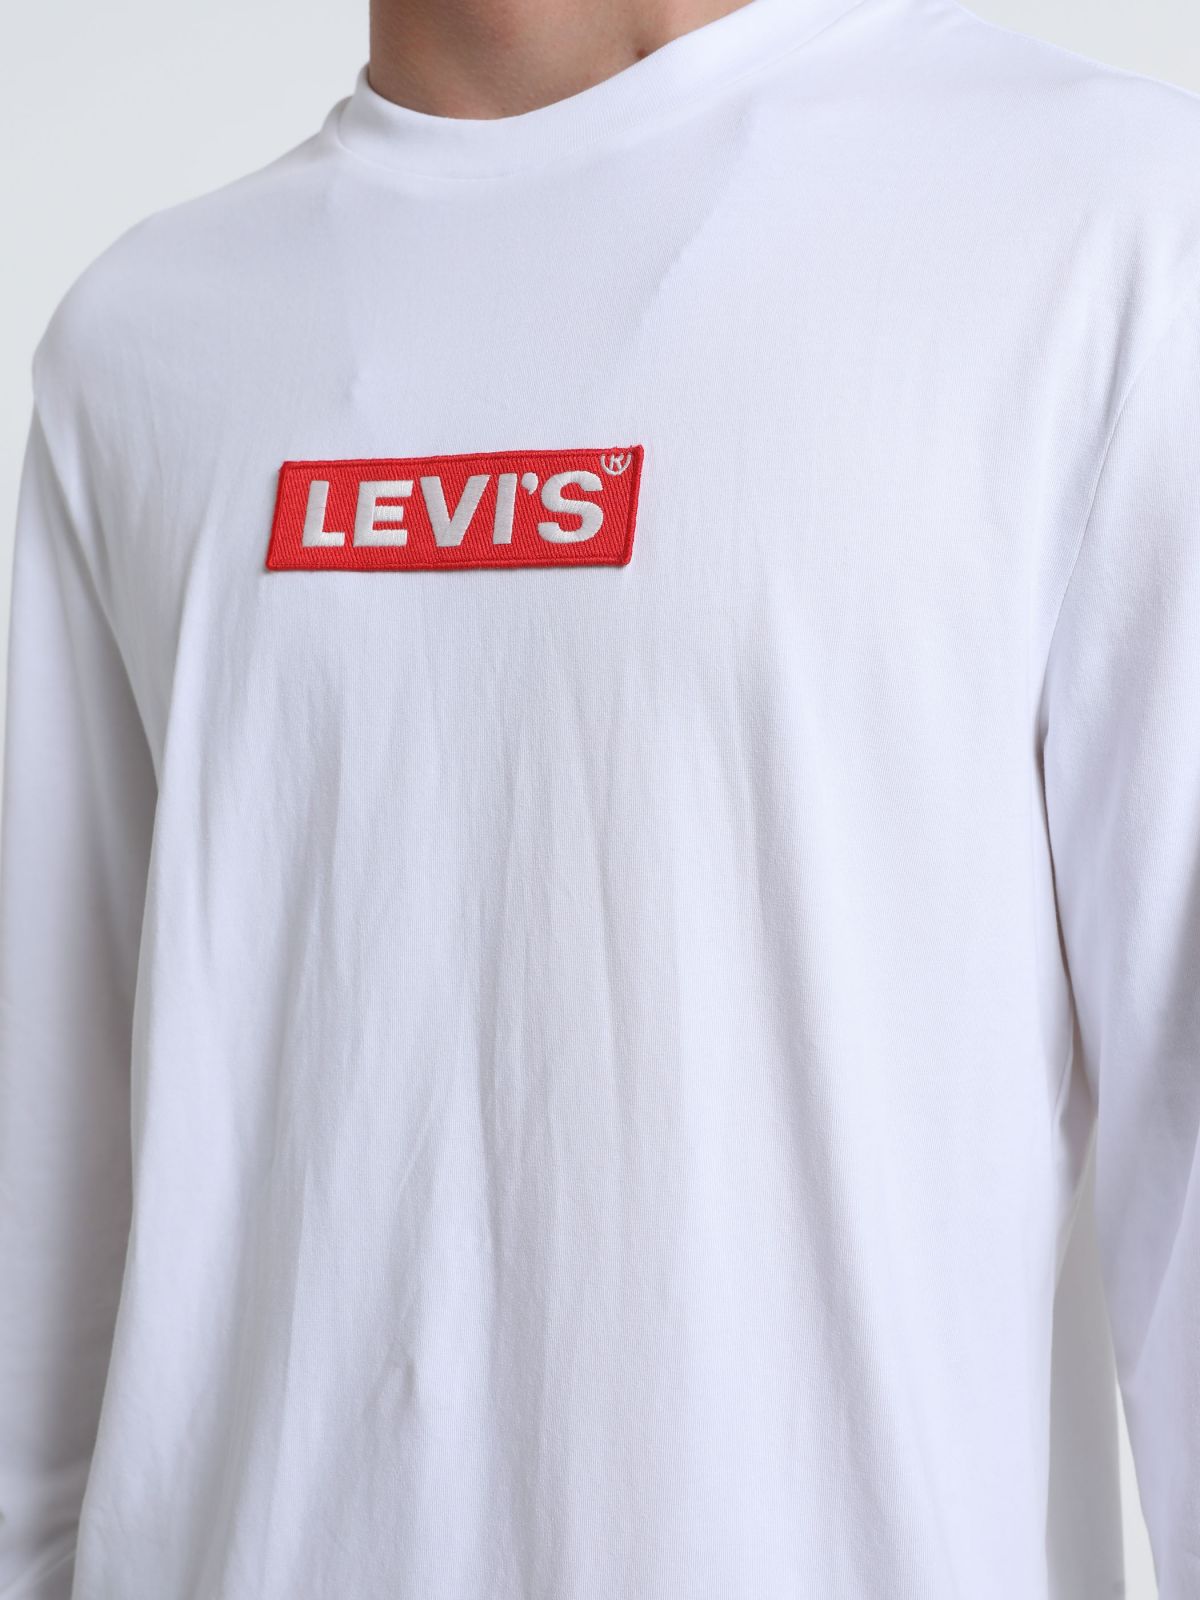  טי שירט עם לוגו של LEVIS